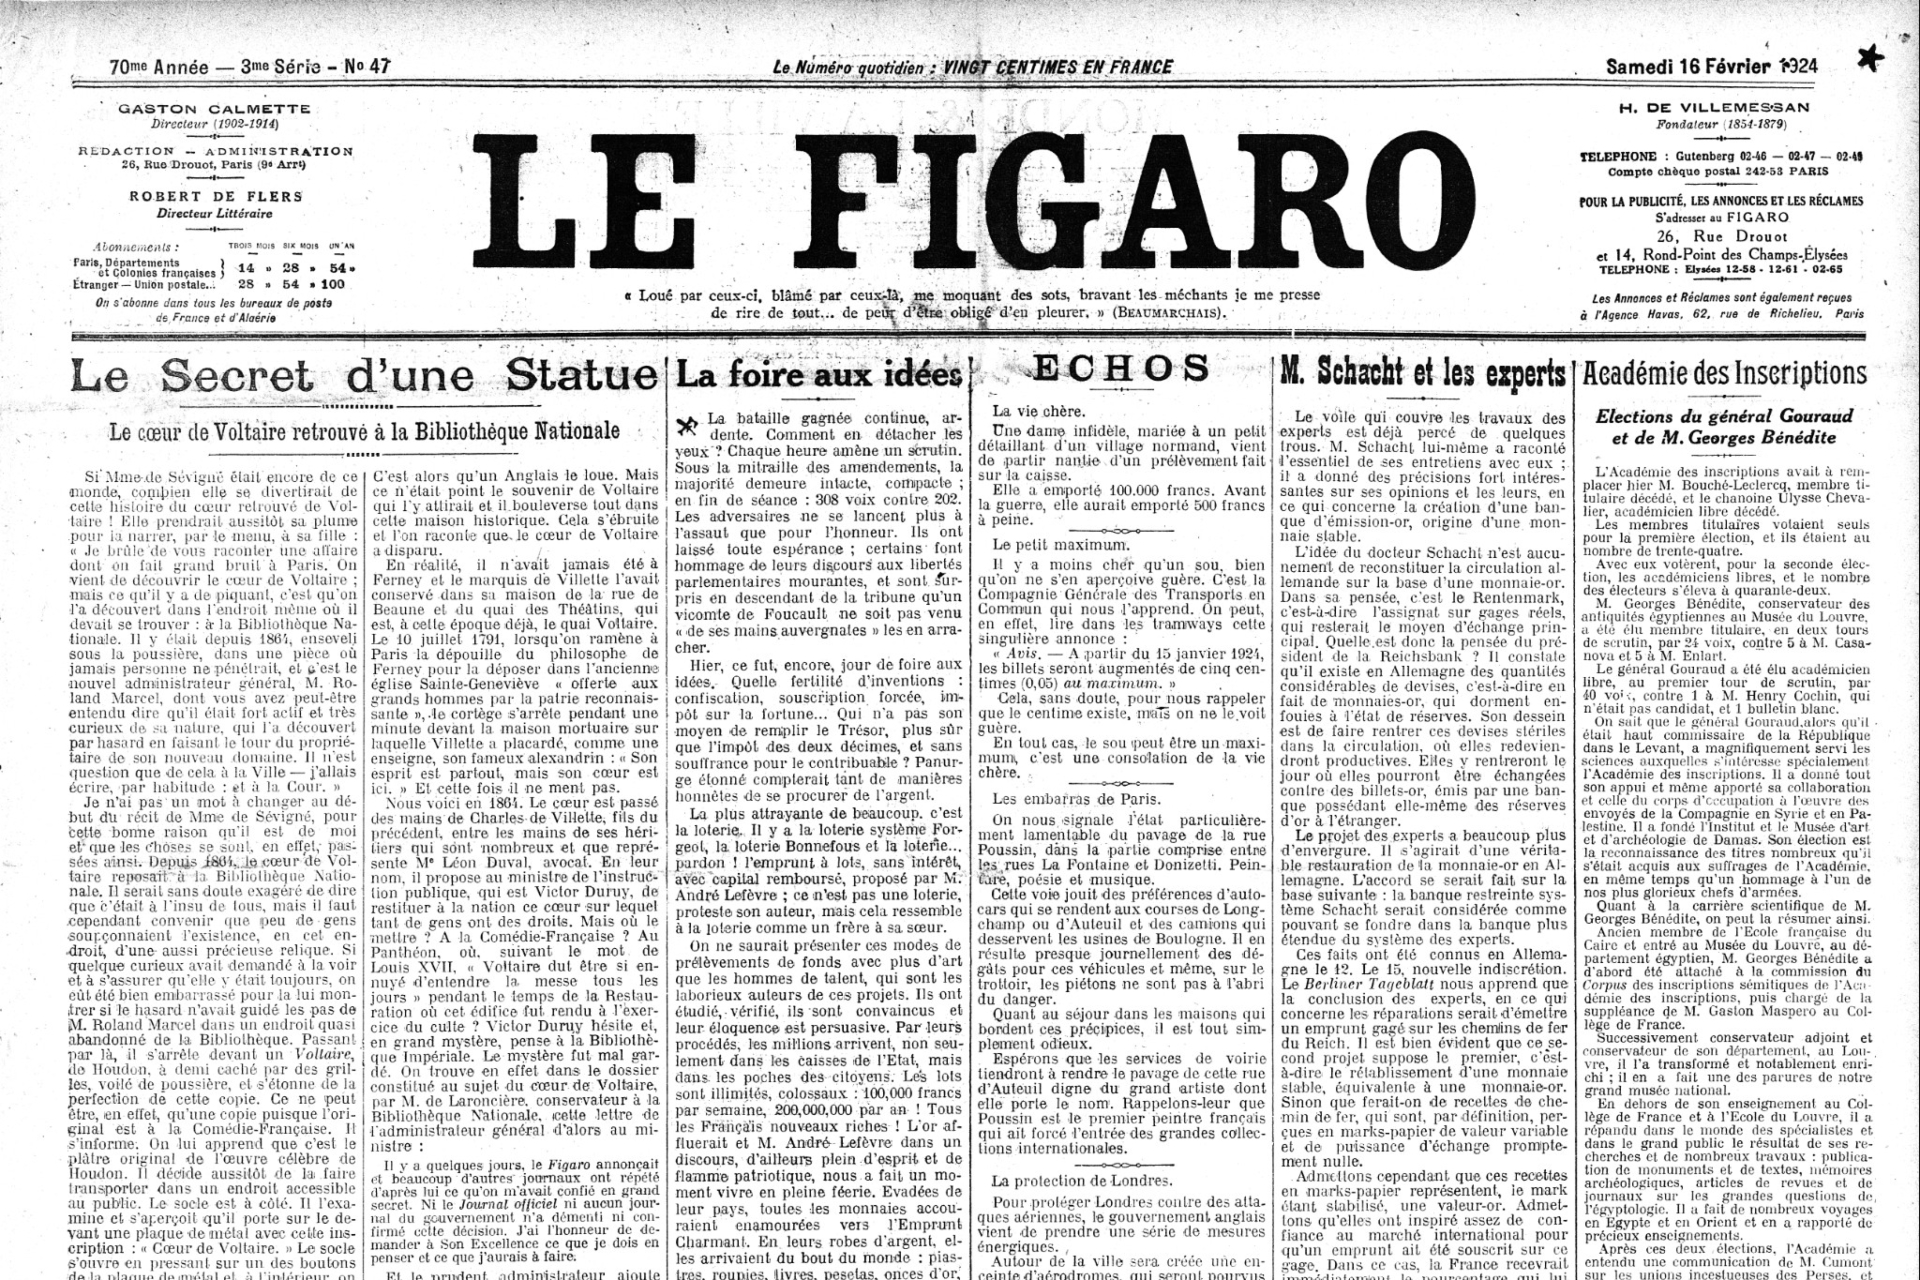 Extrait du Figaro de l'époque